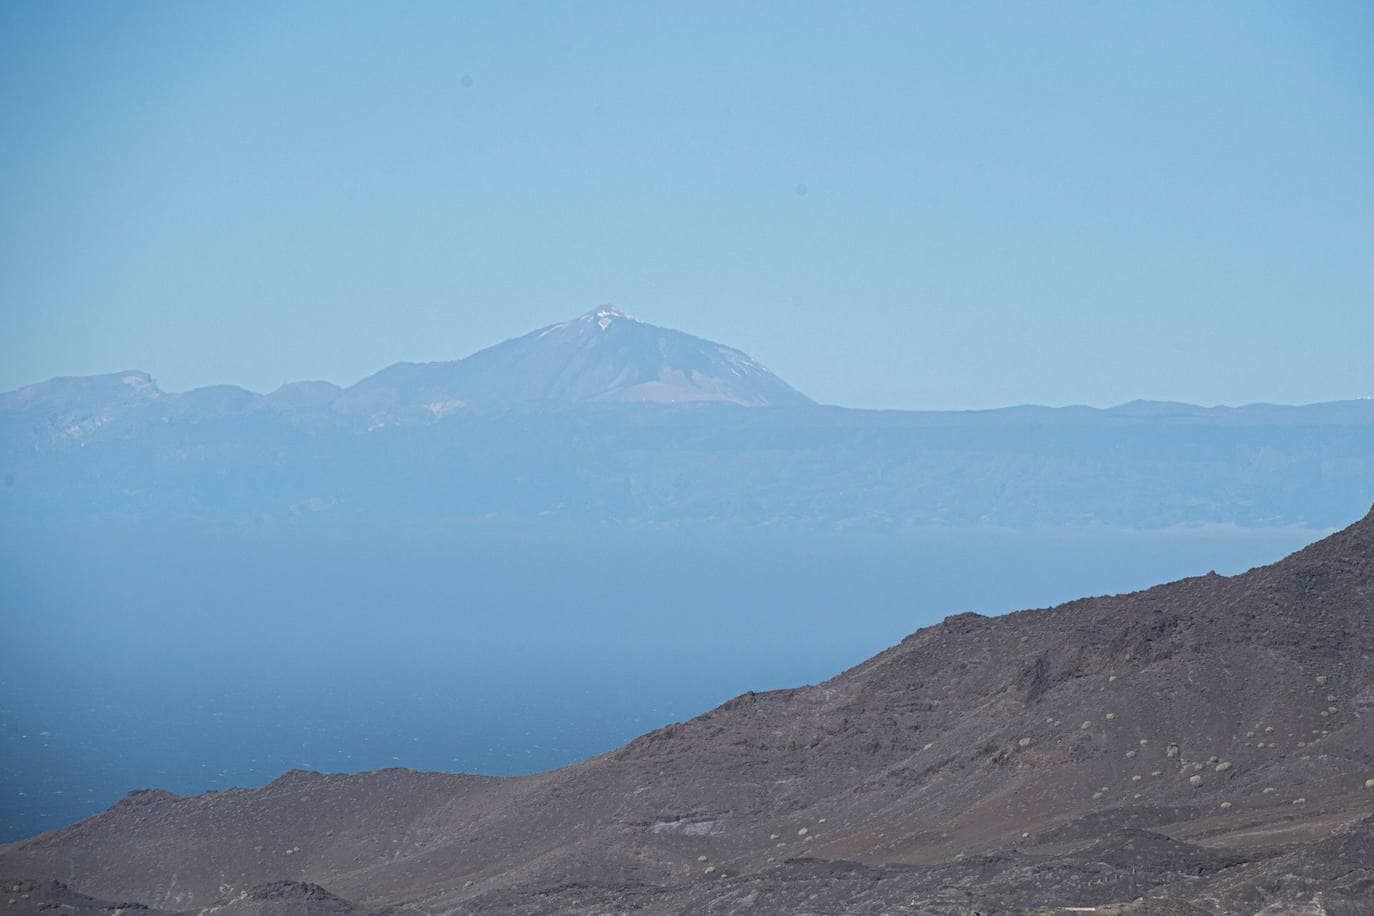 El Teide visto desde Gran Canaria en todo su esplendor